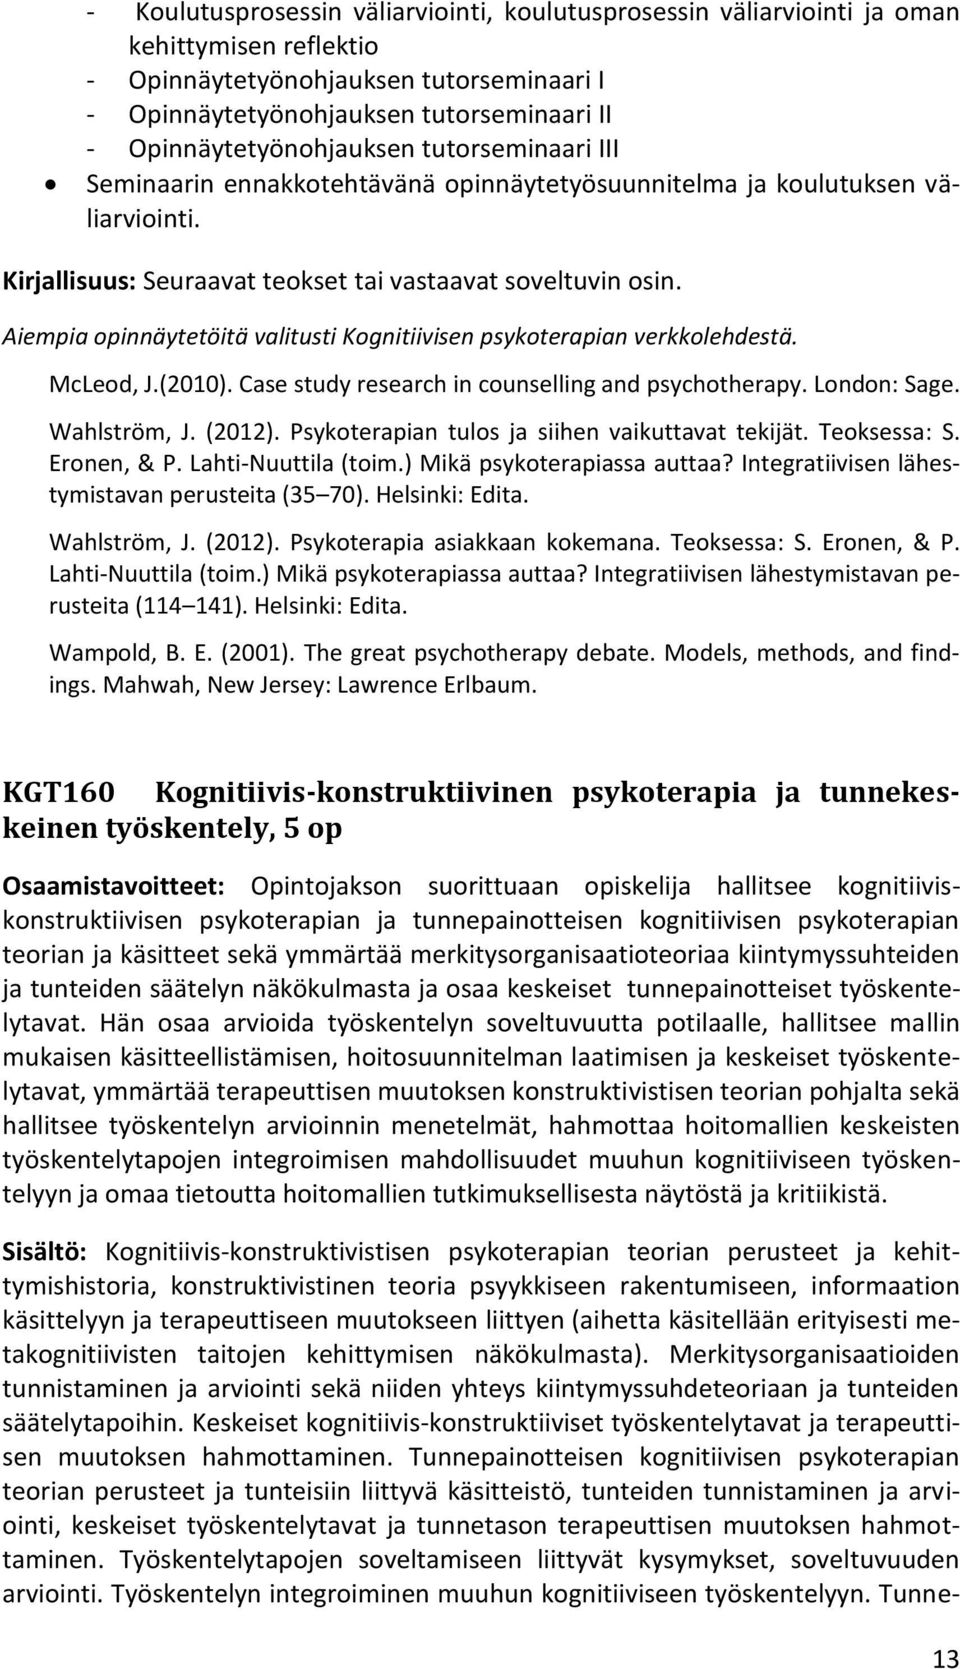 Aiempia opinnäytetöitä valitusti Kognitiivisen psykoterapian verkkolehdestä. McLeod, J.(2010). Case study research in counselling and psychotherapy. London: Sage. Wahlström, J. (2012).